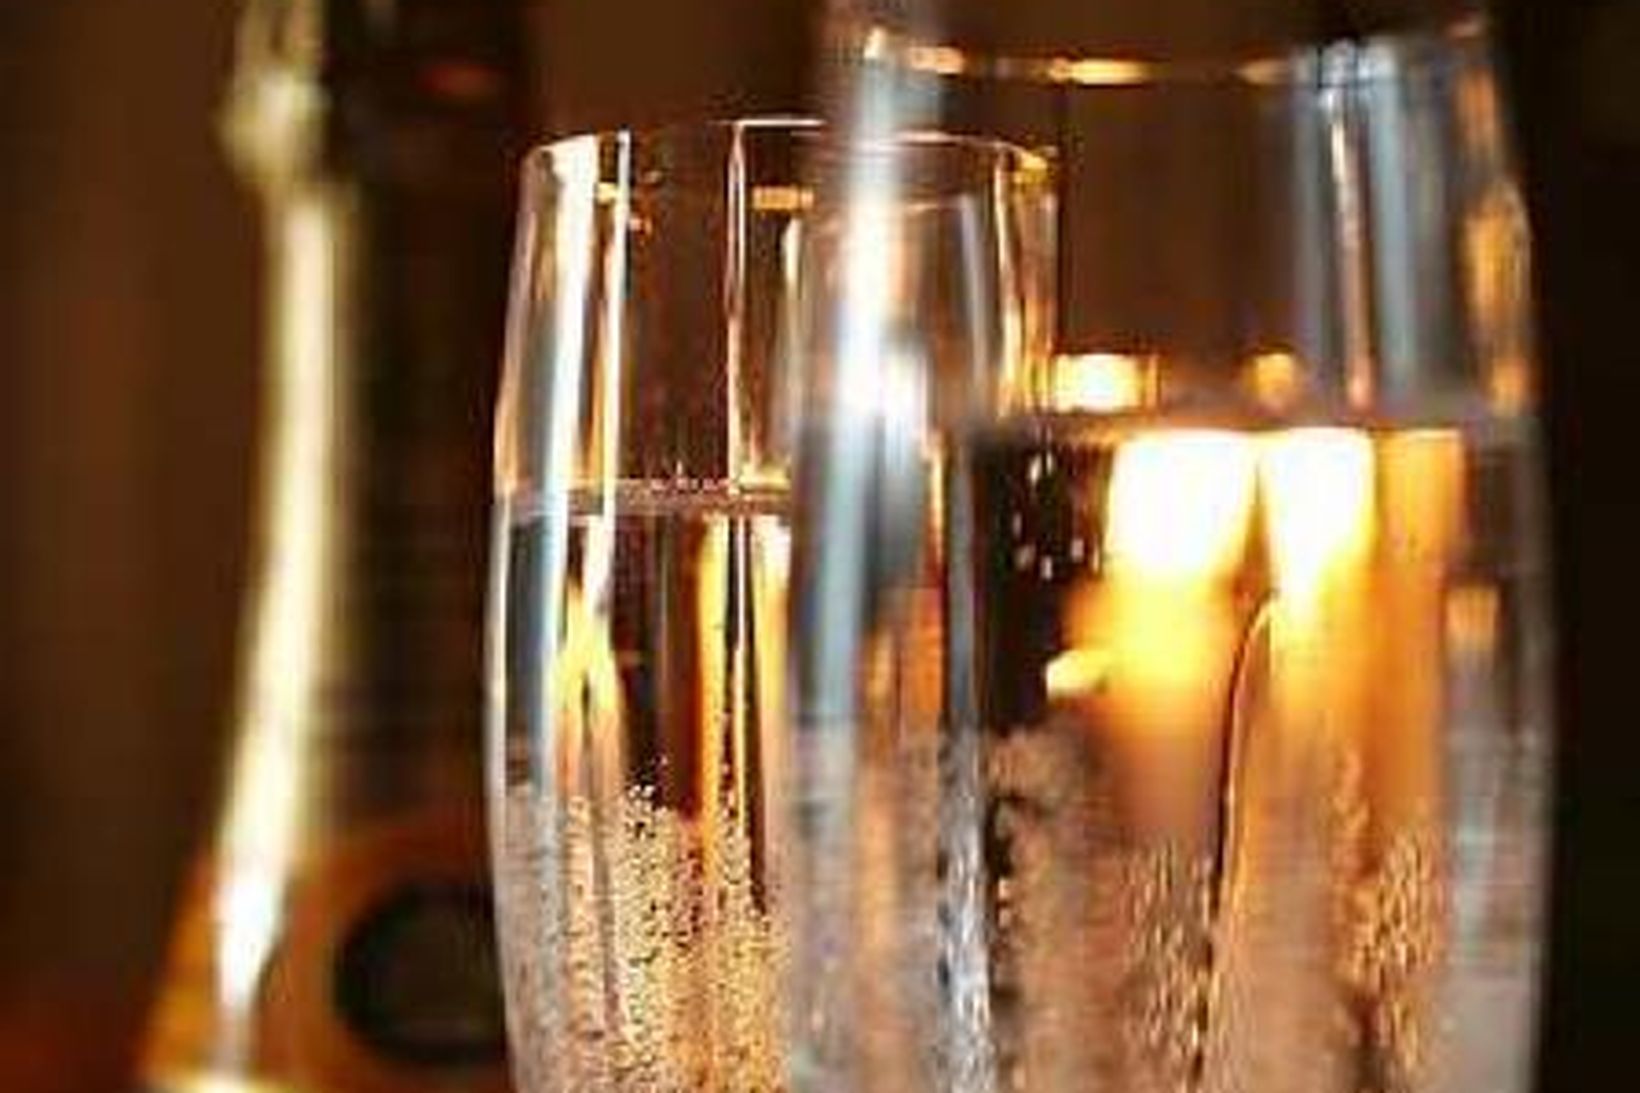 Kampavín dregur nafn sitt frá héraðinu Champagne í Frakklandi.